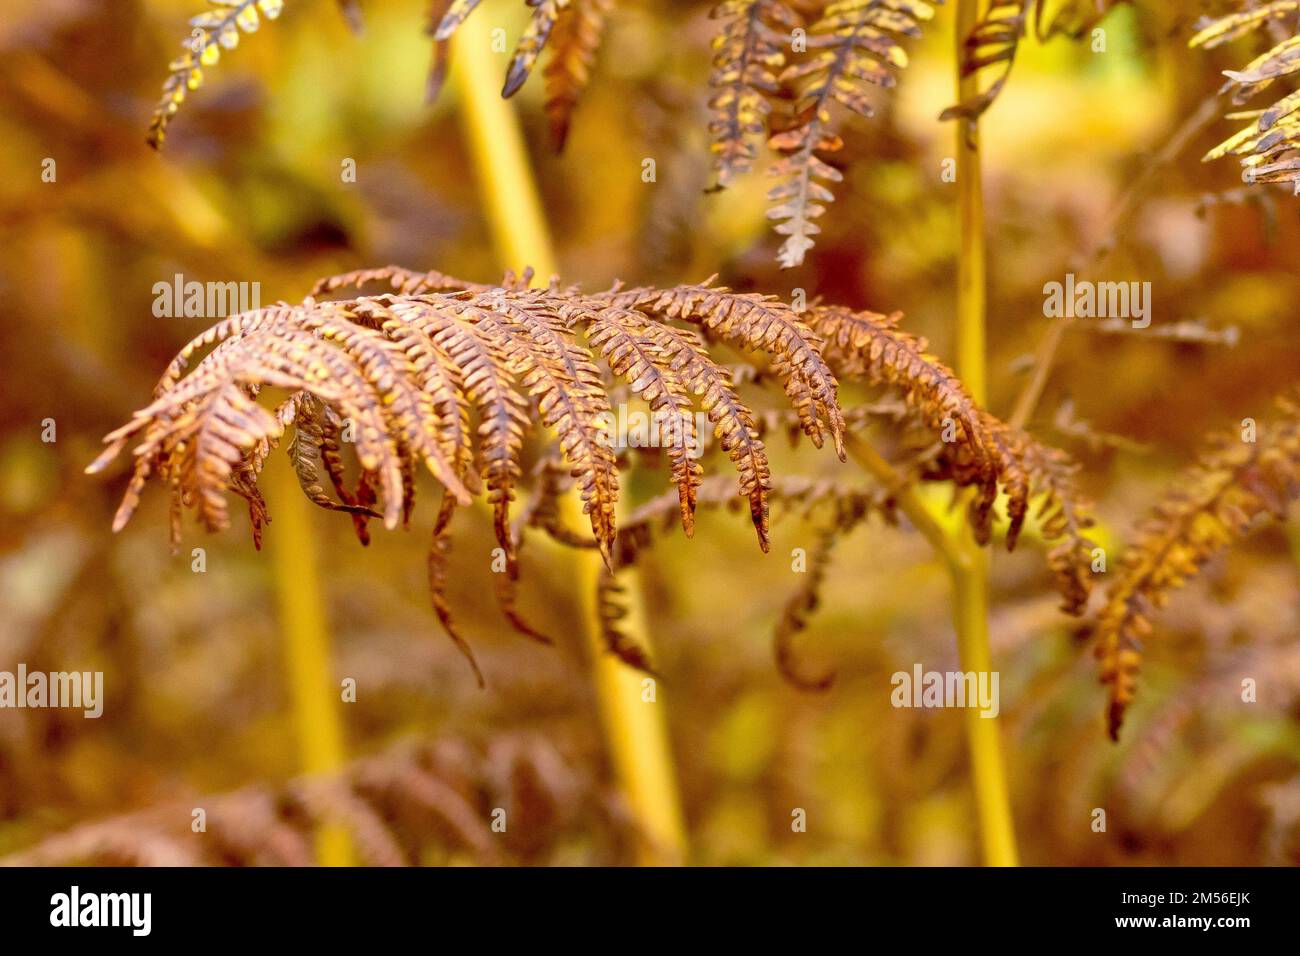 Bracken (pteridium aquilinum), gros plan d'une fronde montrant les folioles individuelles de la fougères à feuilles caduques communes dans ses couleurs d'automne jaune et marron Banque D'Images